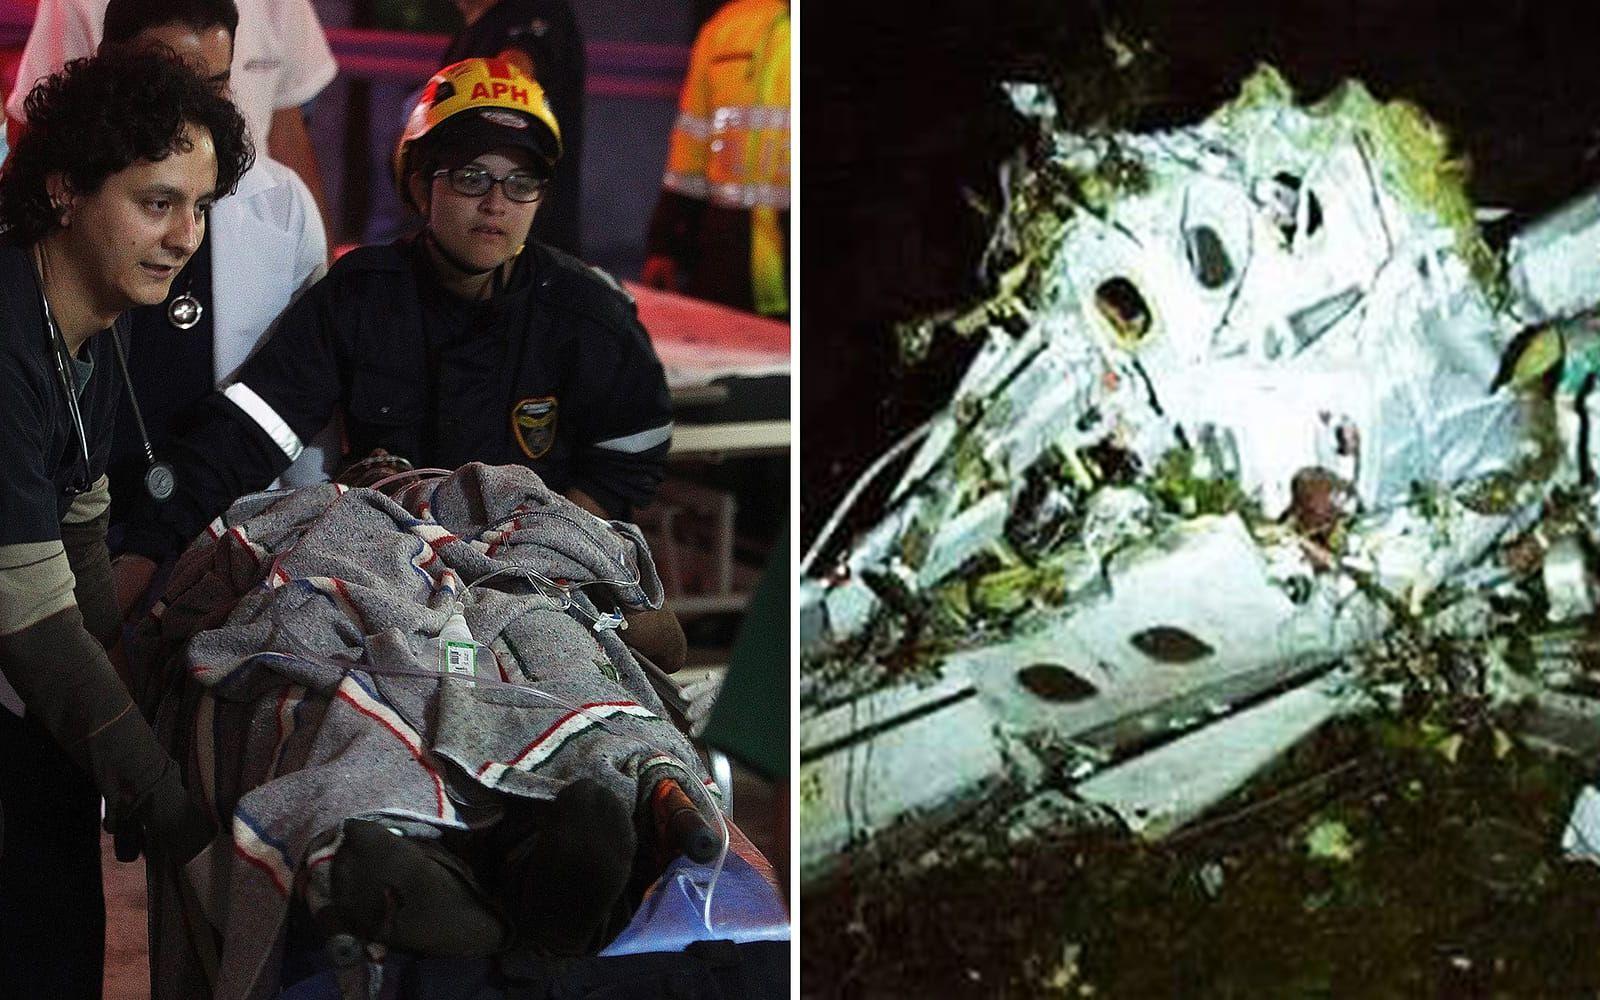 75 dog i flygkraschen nära Medellin i Colombia. BILDER: Luis Eduardo Noriega/EPA och Defensa Civil